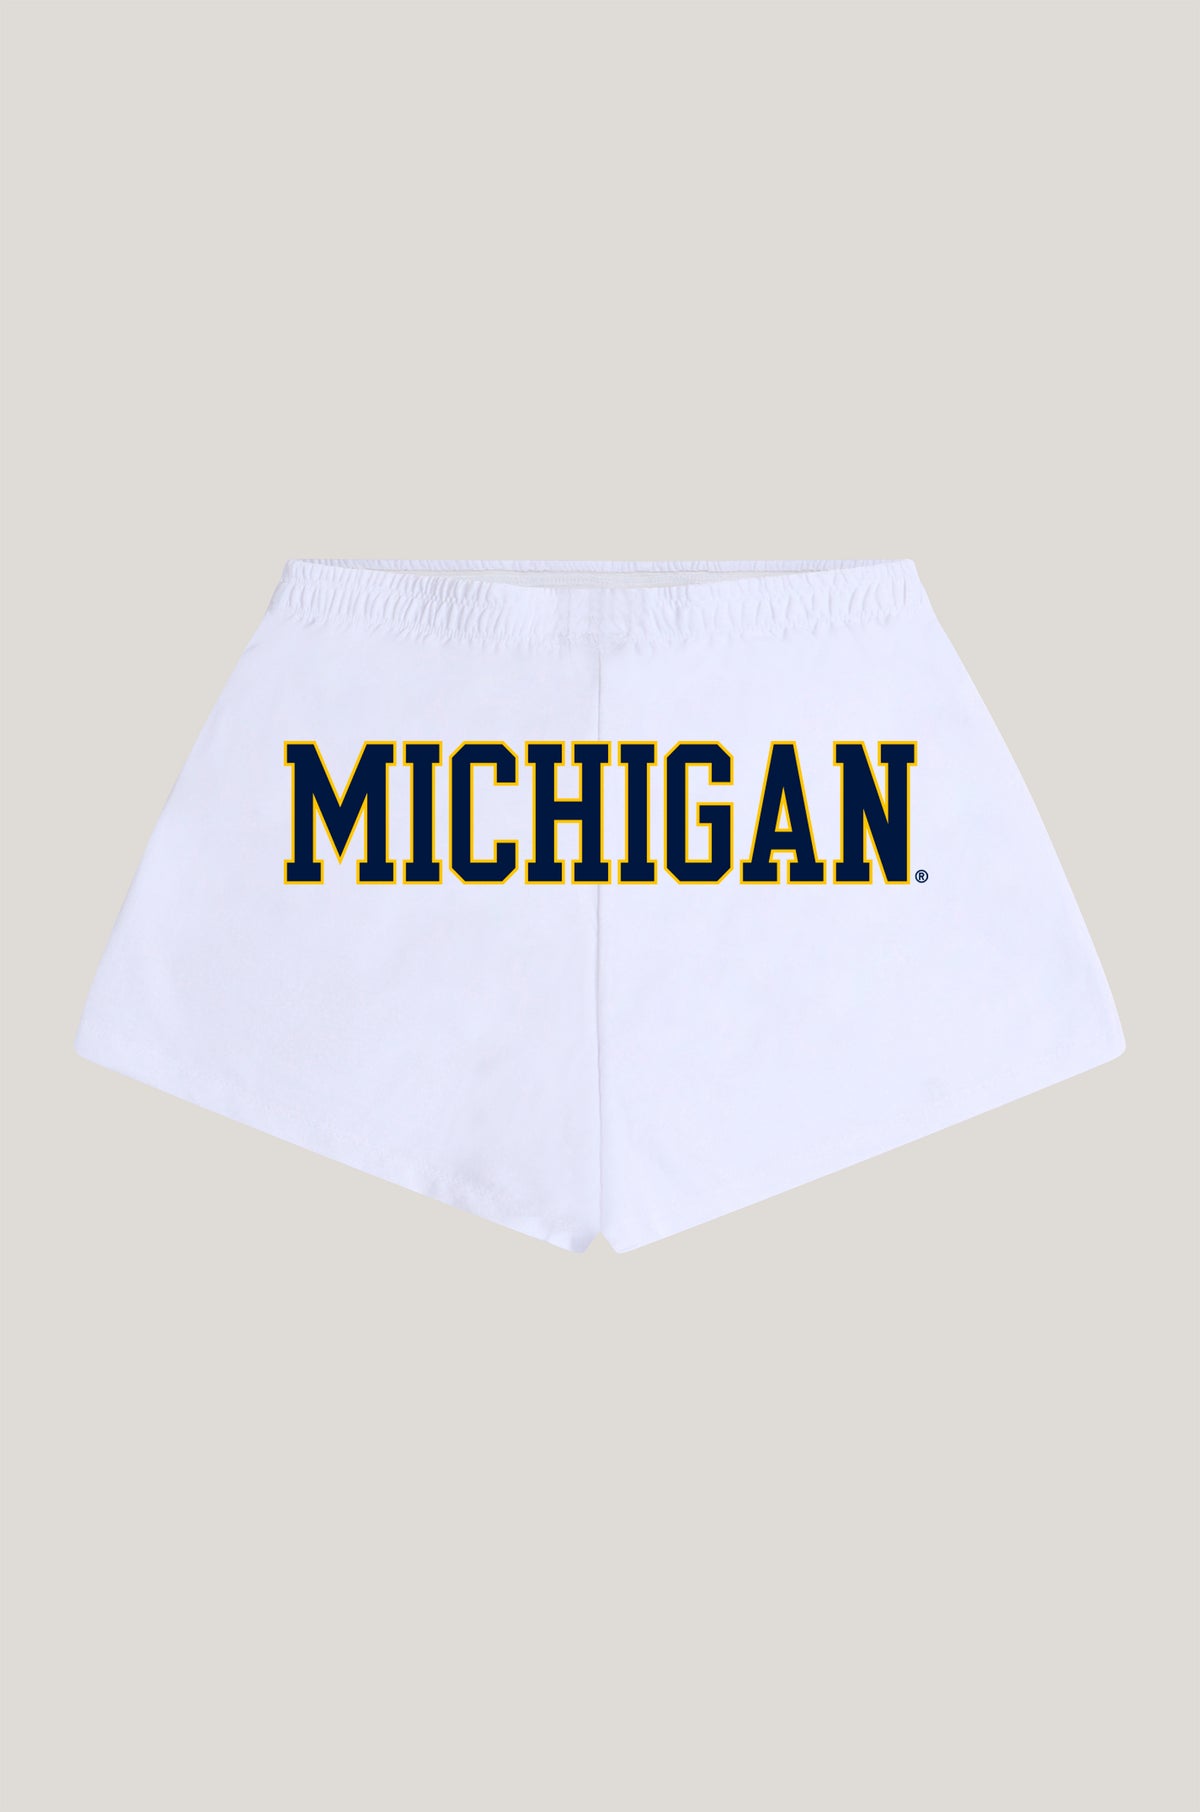 University of Michigan P.E. Shorts